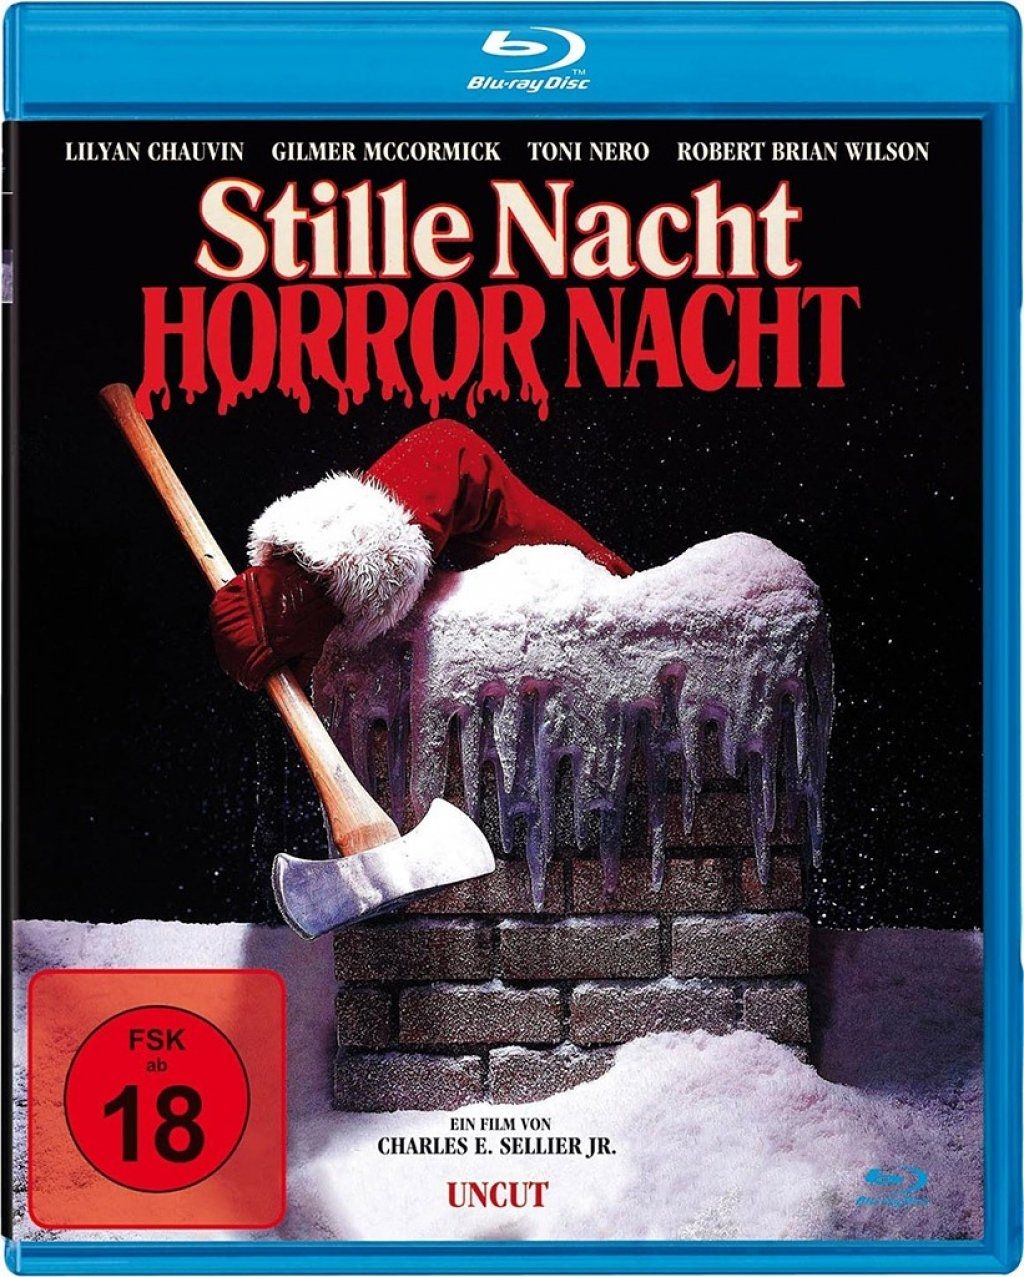 Stille Nacht, Horror Nacht (Uncut) (Neuauflage) (BLURAY)